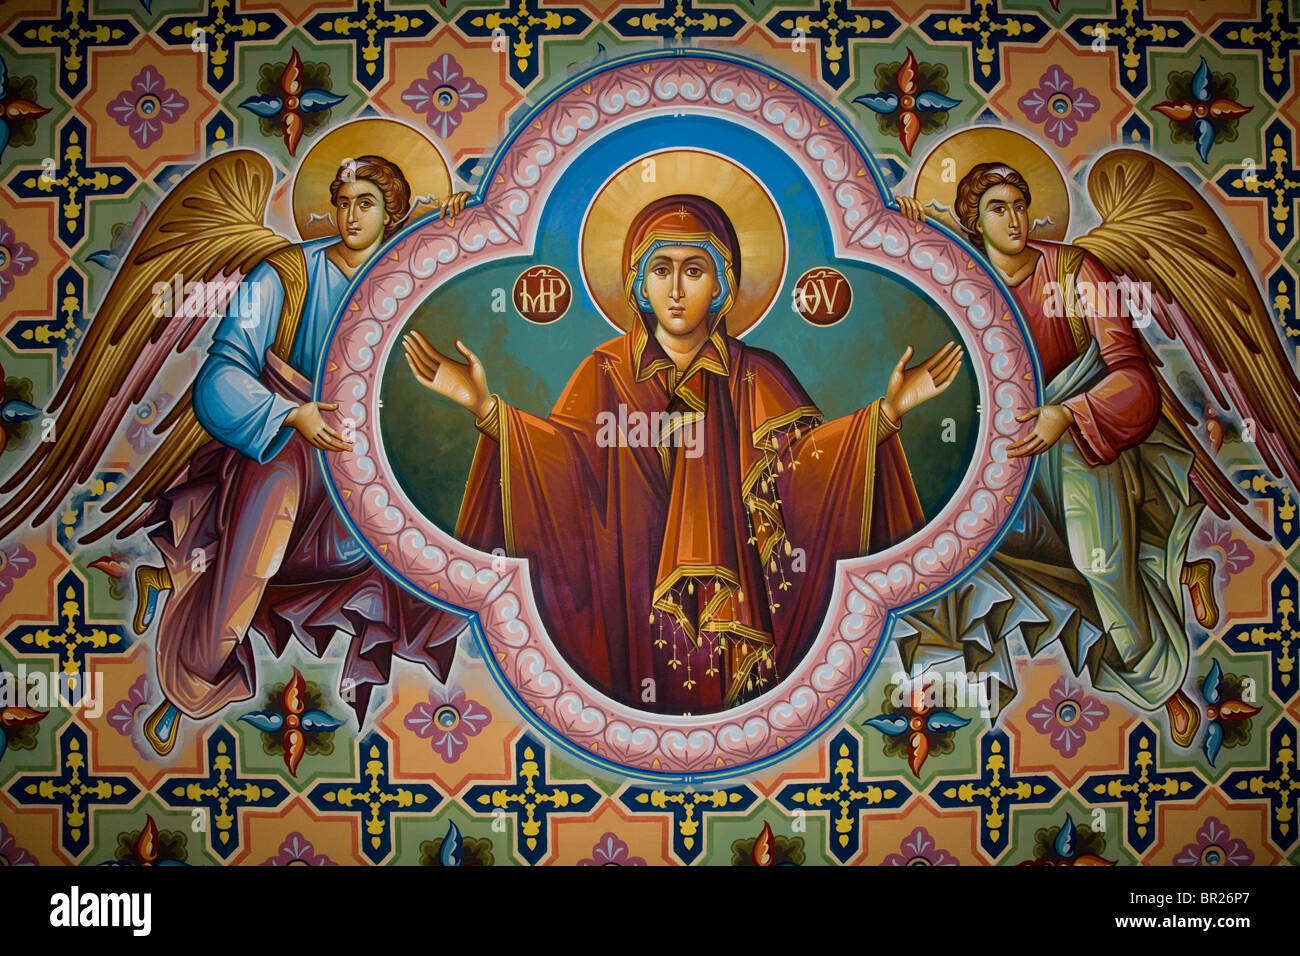 Vierge Mère Marie bras ouverts fresque murale de l'Église grecque deux anges cadre de support coloré décoration ancienne église Christianisme Banque D'Images